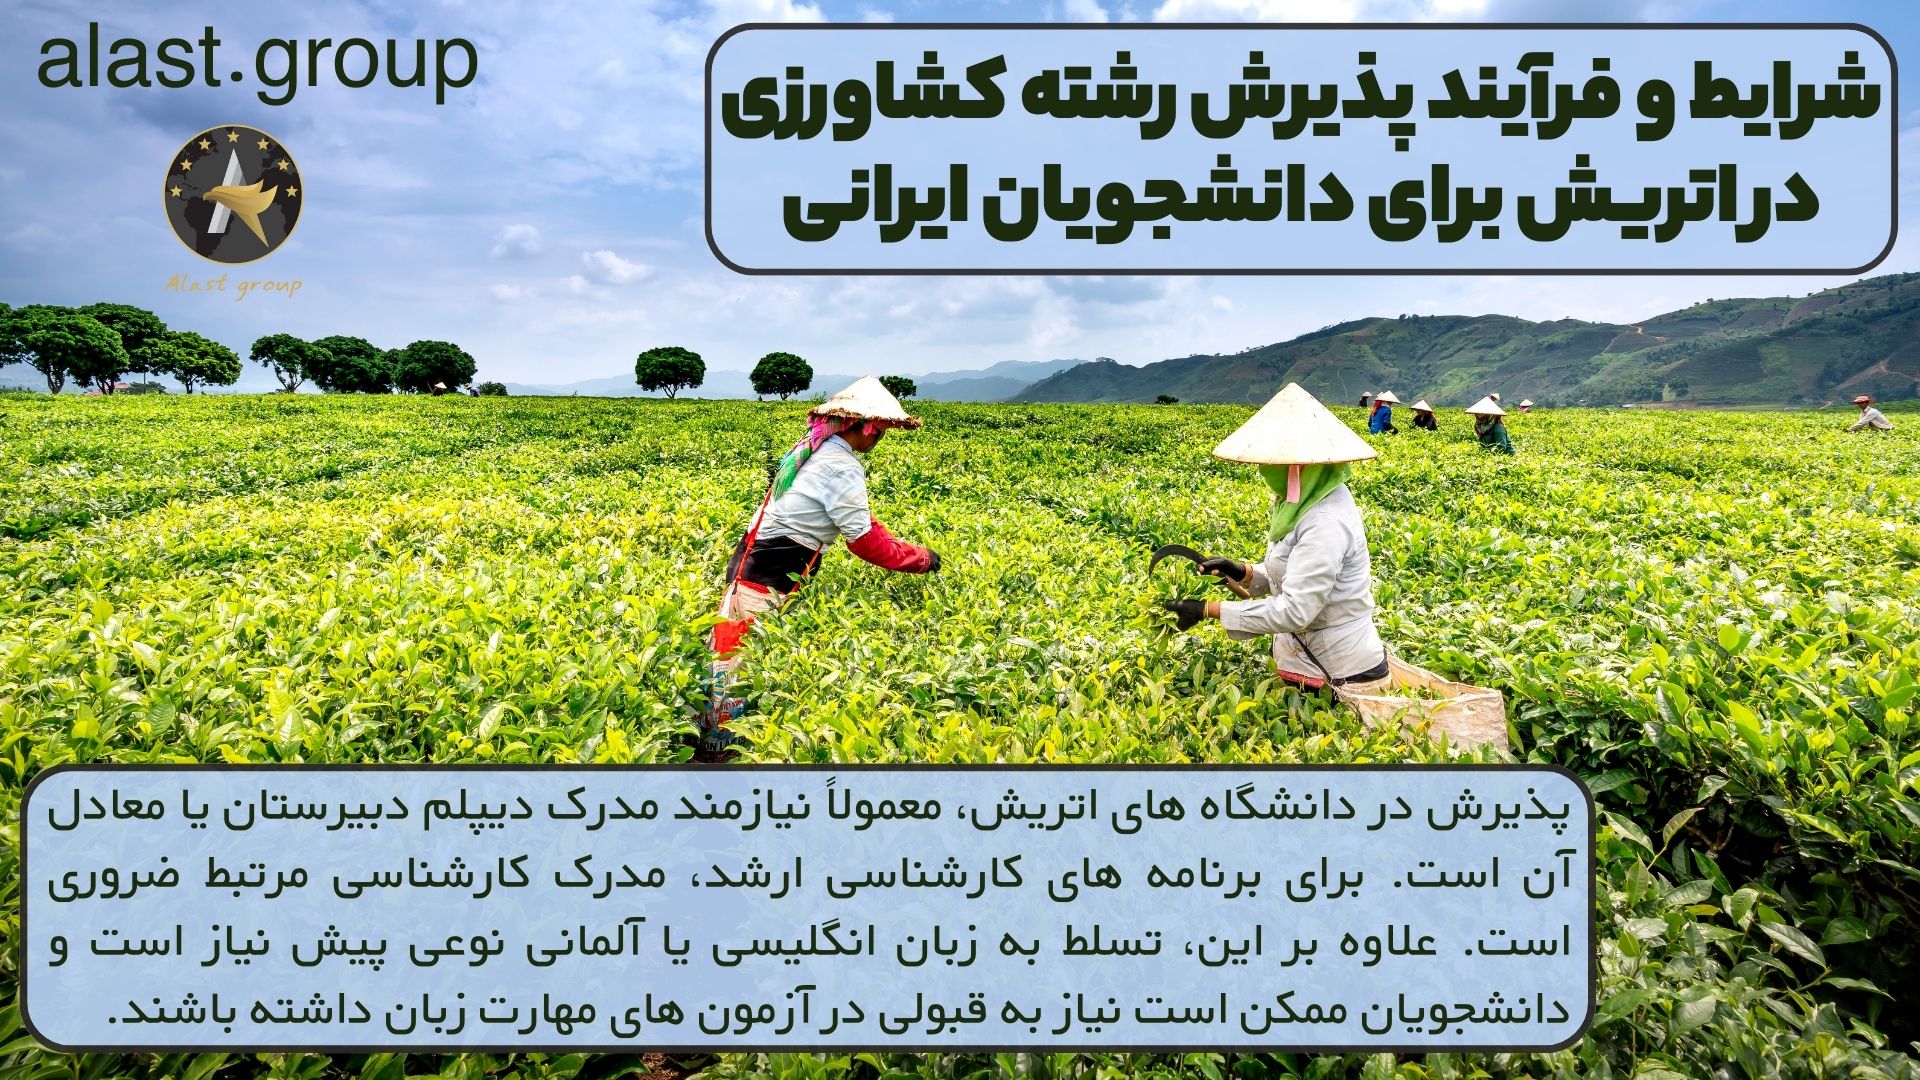 شرایط و فرآیند پذیرش رشته کشاورزی در اتریش برای دانشجویان ایرانی